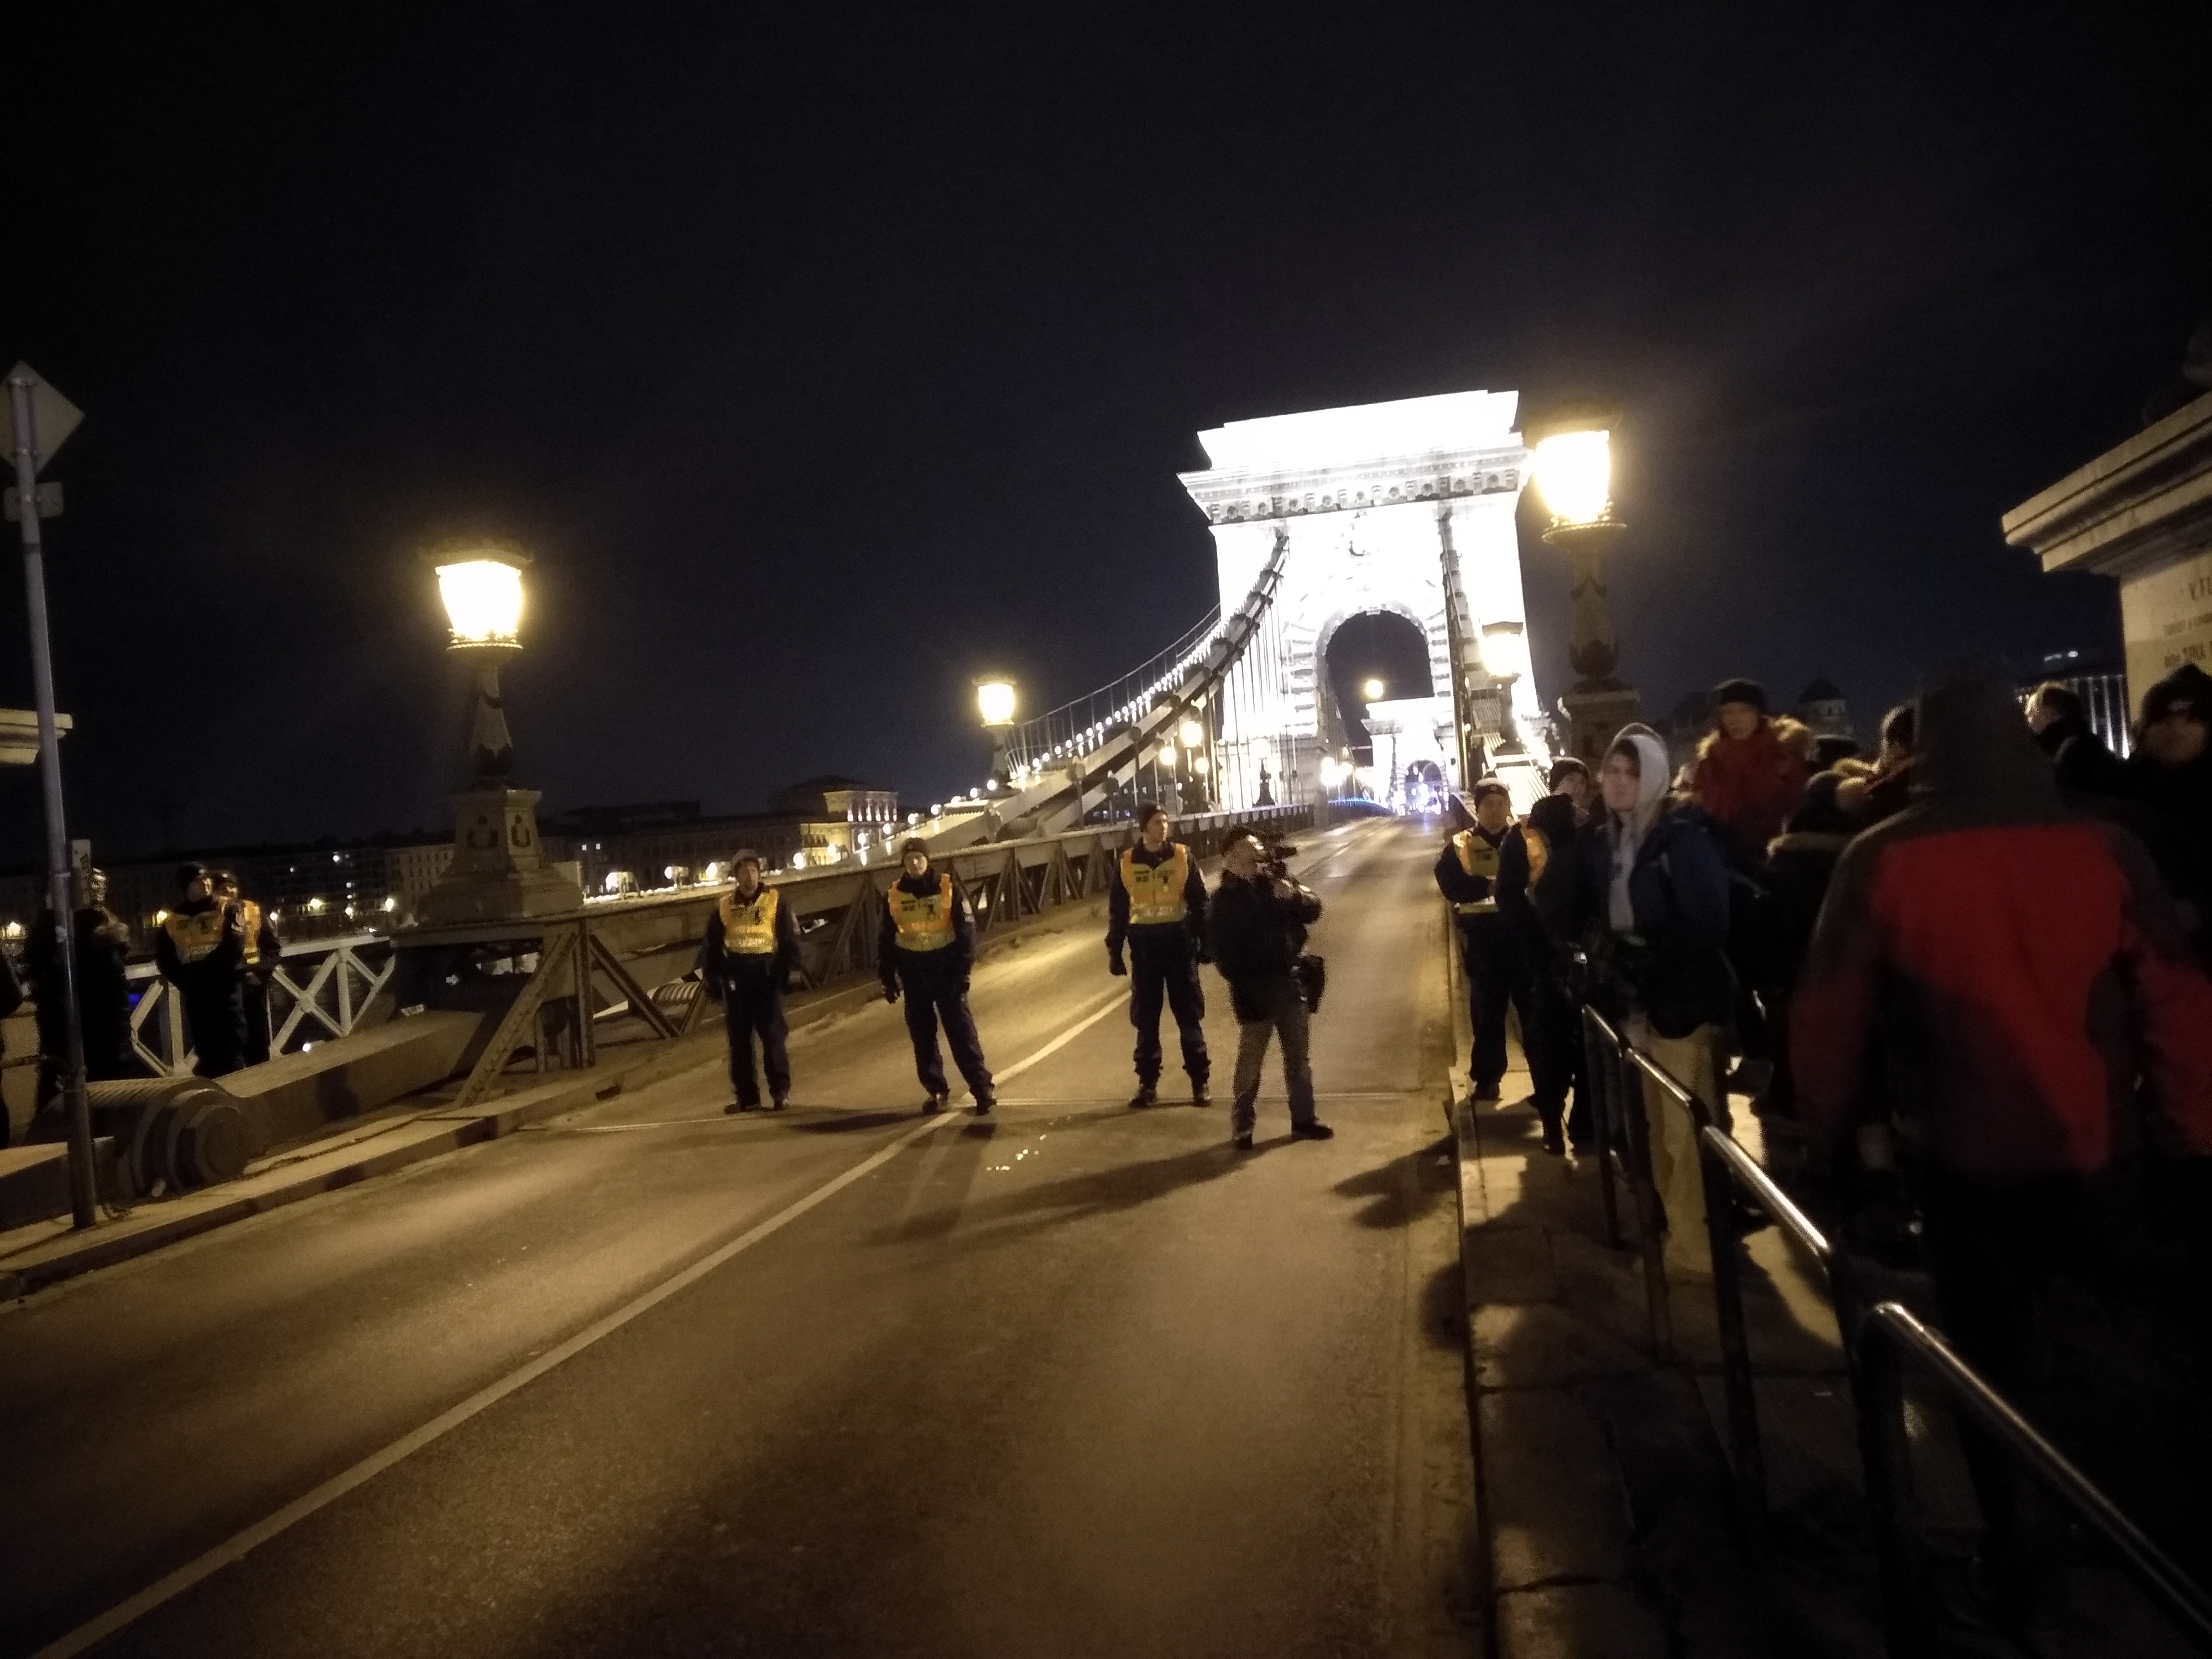 Hat embert állítottak elő Budapesten